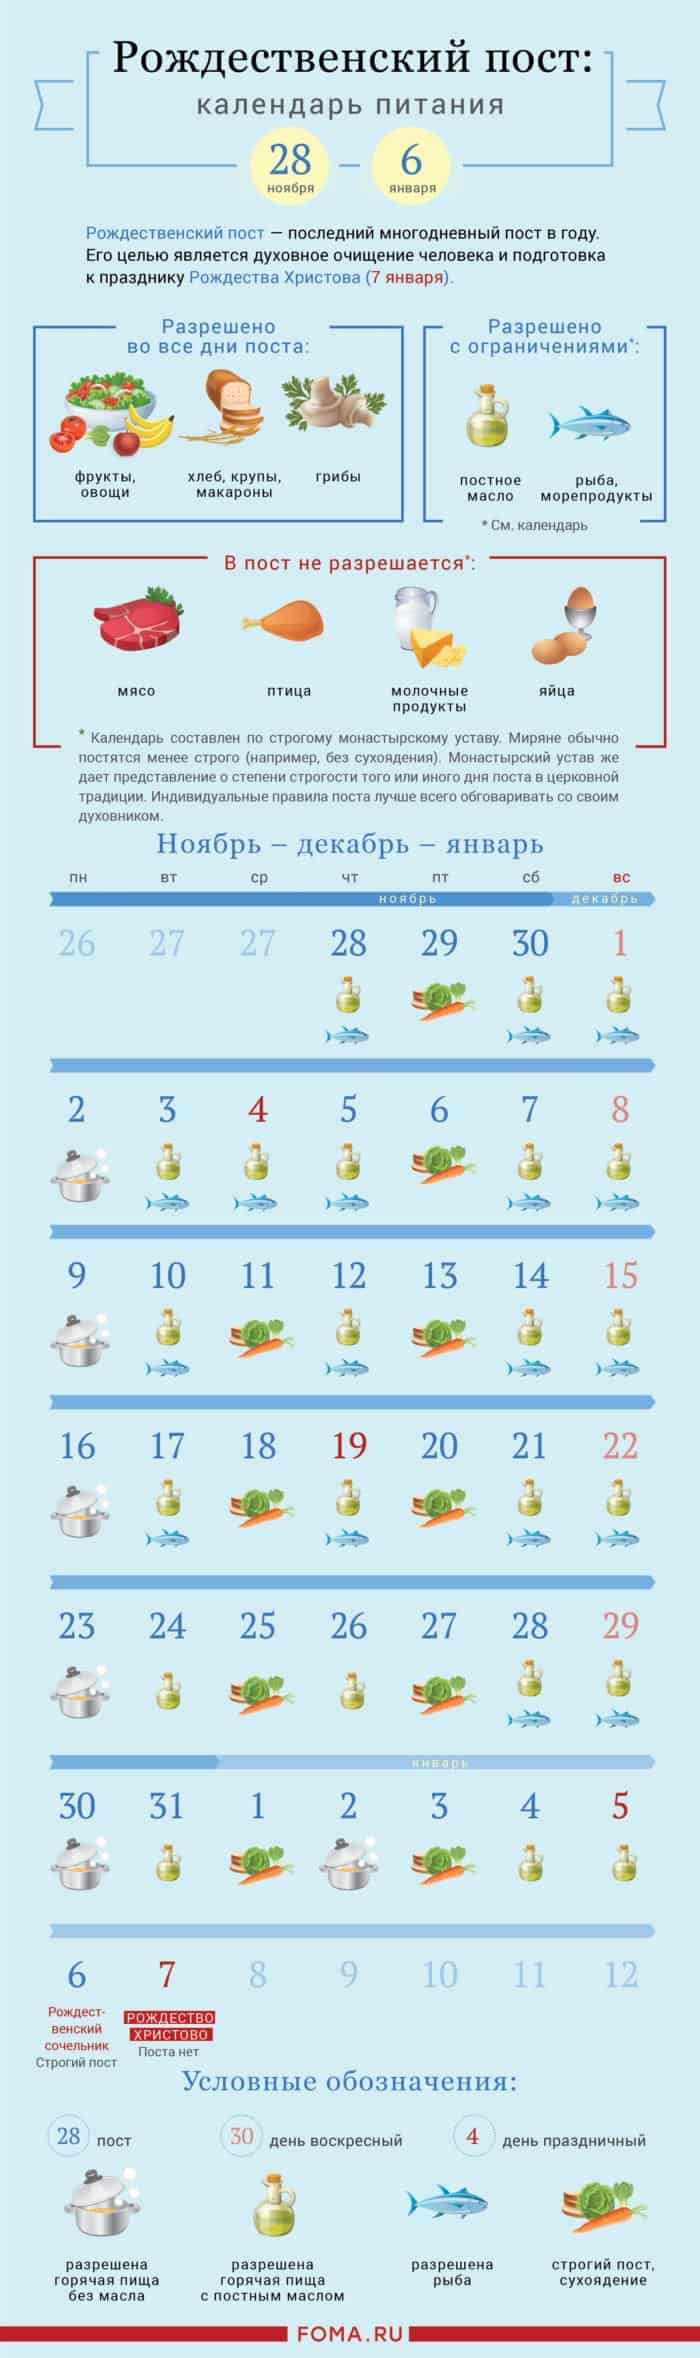 Календарь Рождественского поста